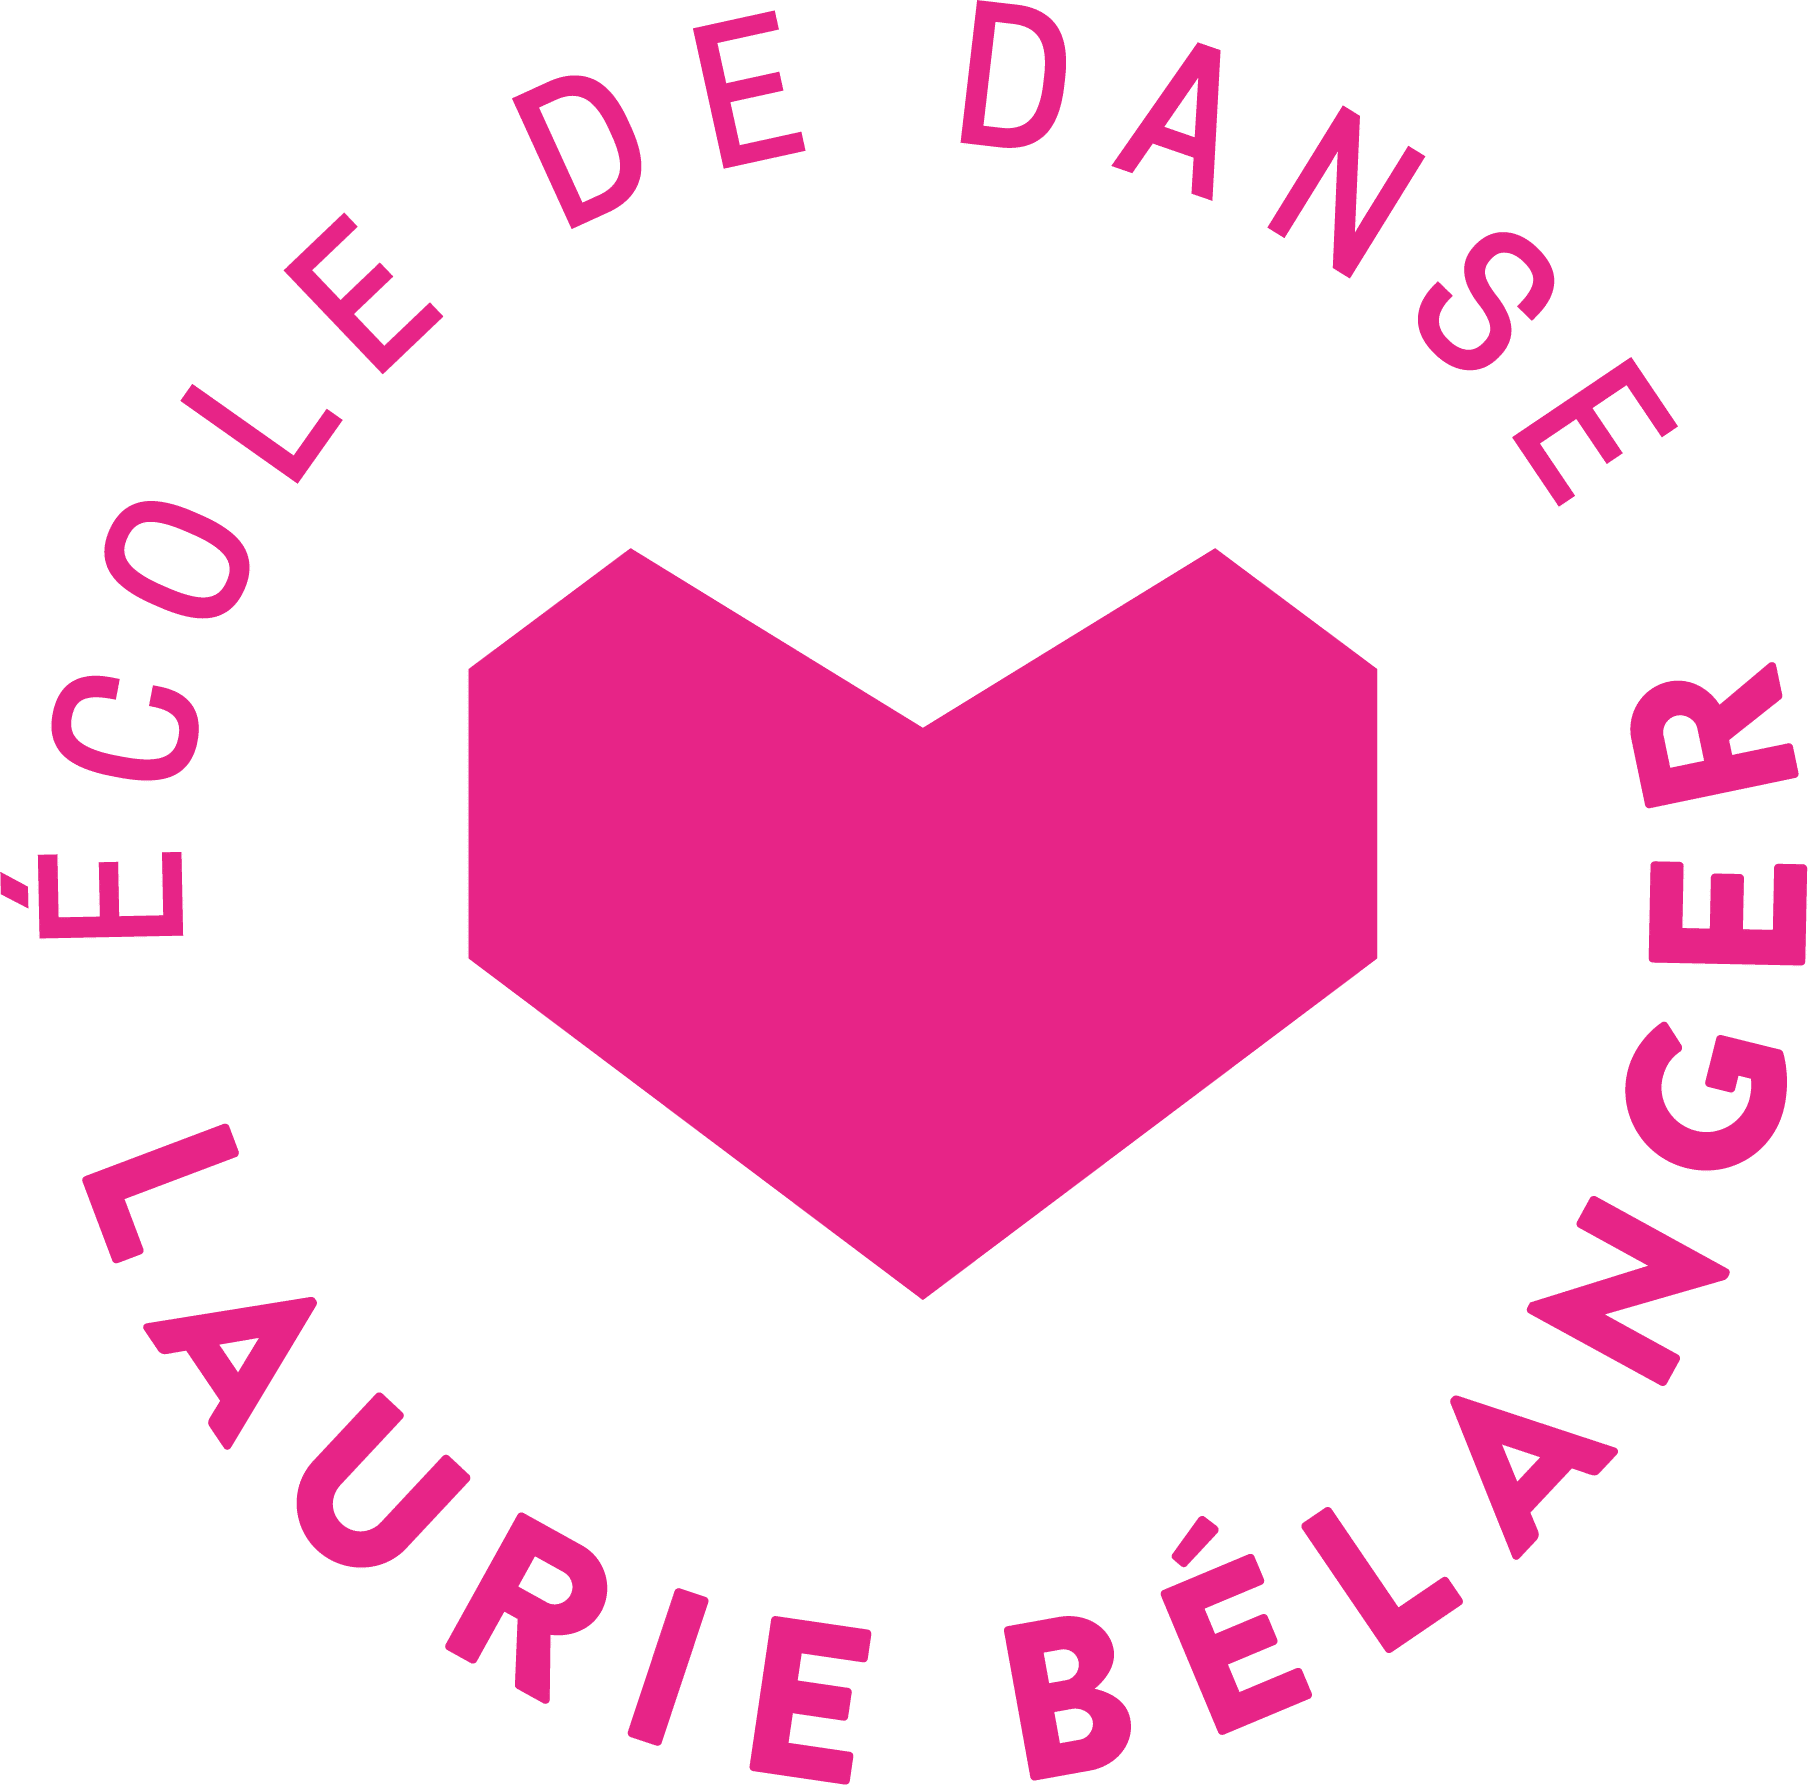 École de danse Laurie Bélanger